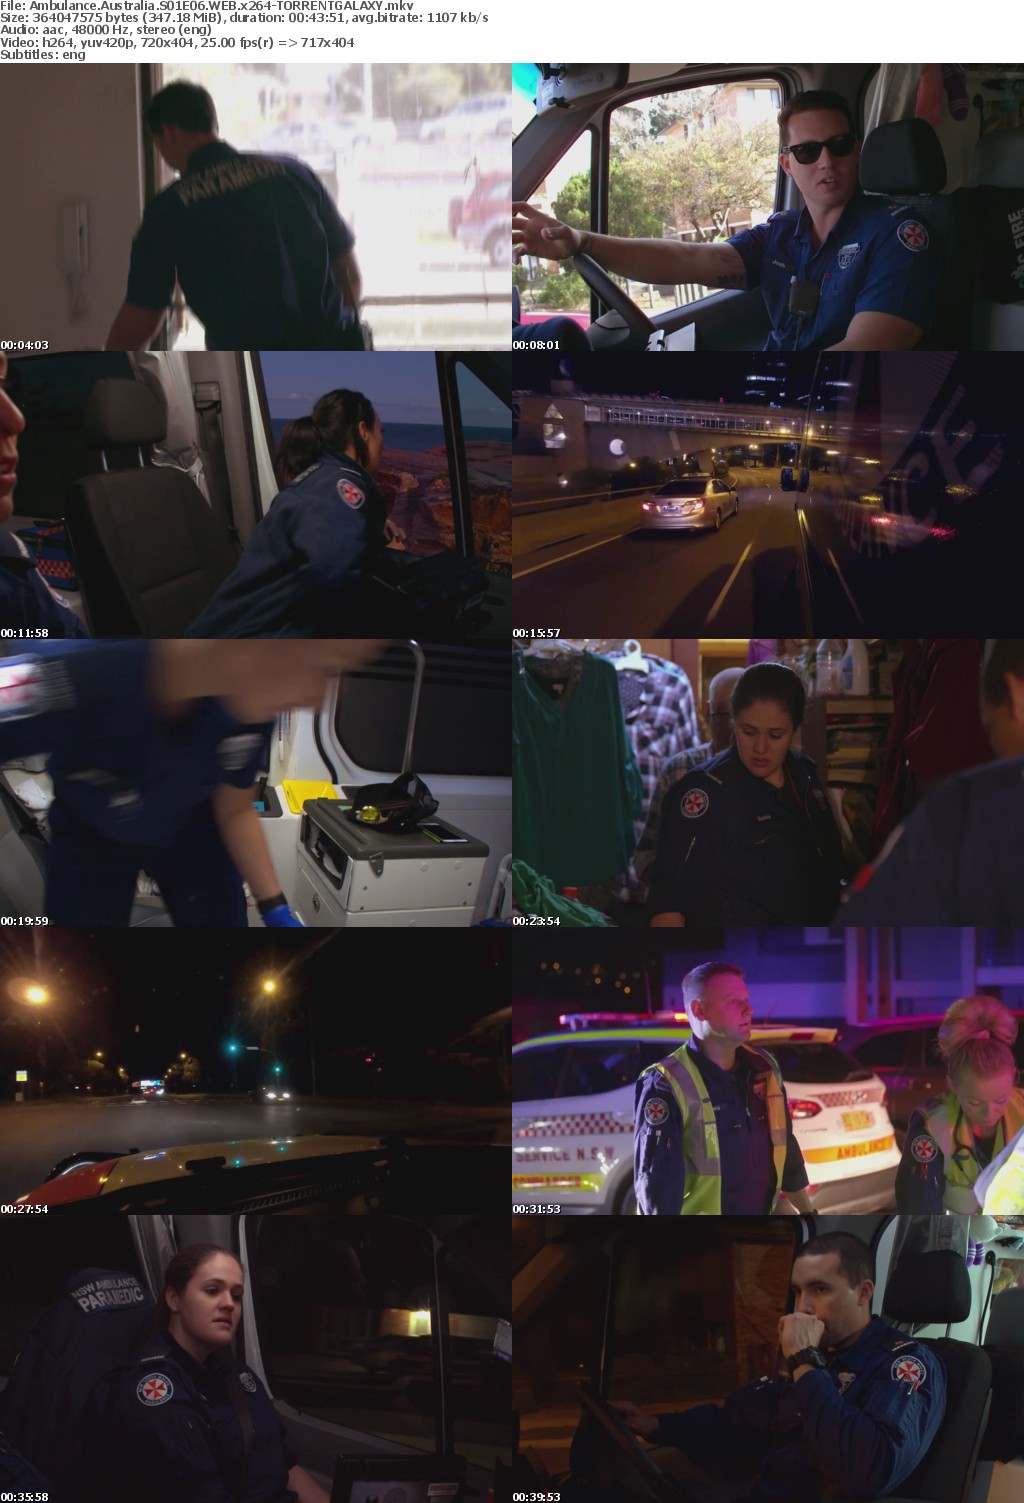 Ambulance Australia S01E06 WEB x264-GALAXY